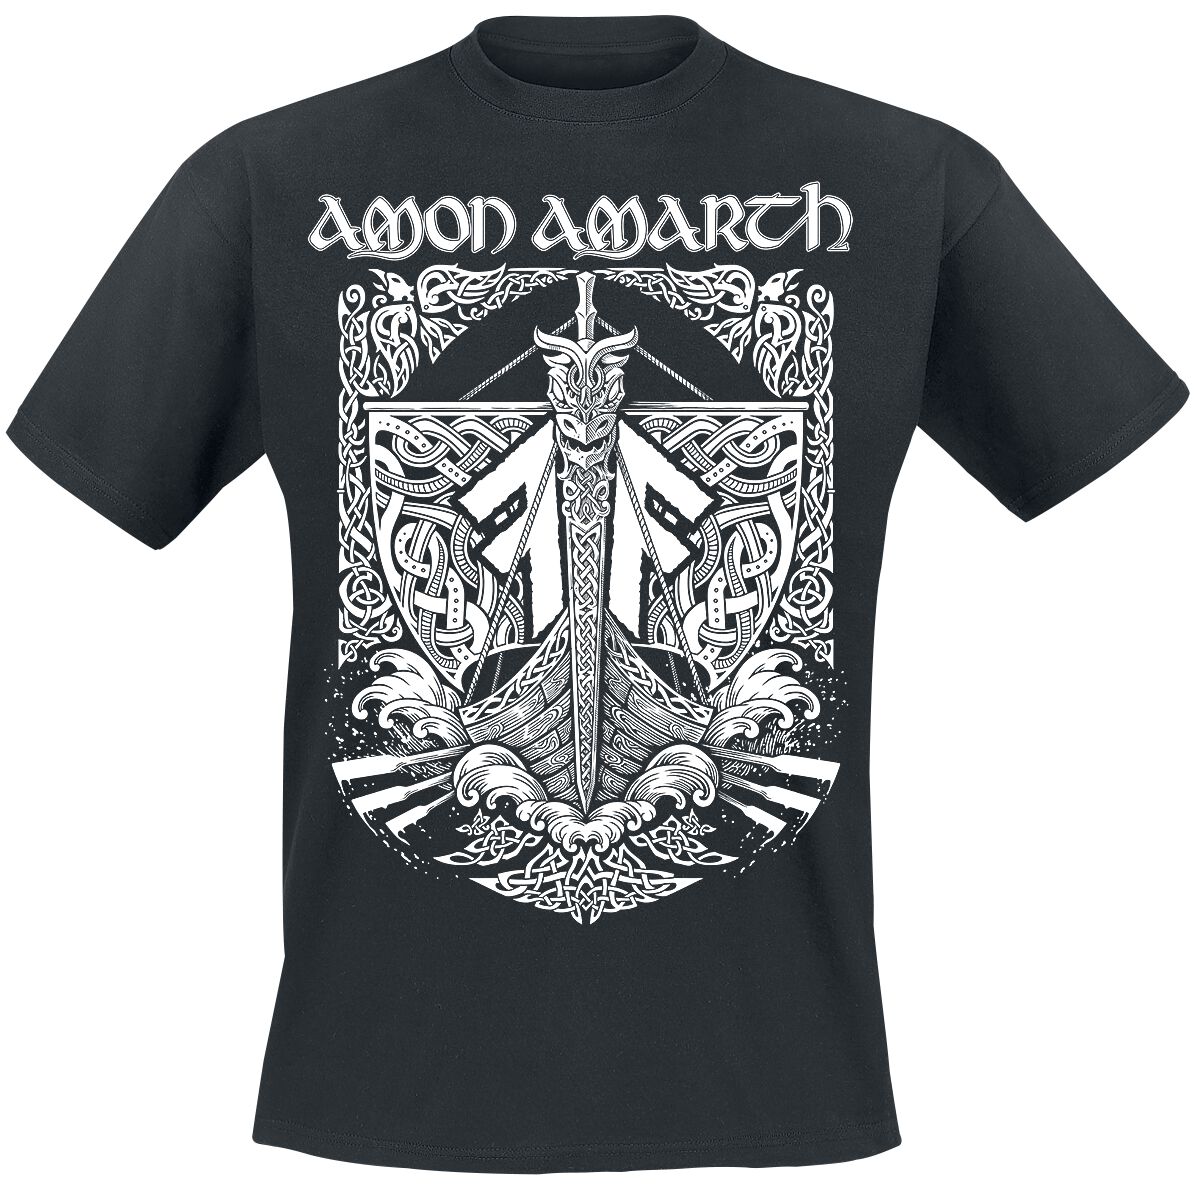 Amon Amarth T-Shirt - Put your back into the oar - S bis 3XL - für Männer - Größe 3XL - schwarz  - Lizenziertes Merchandise!